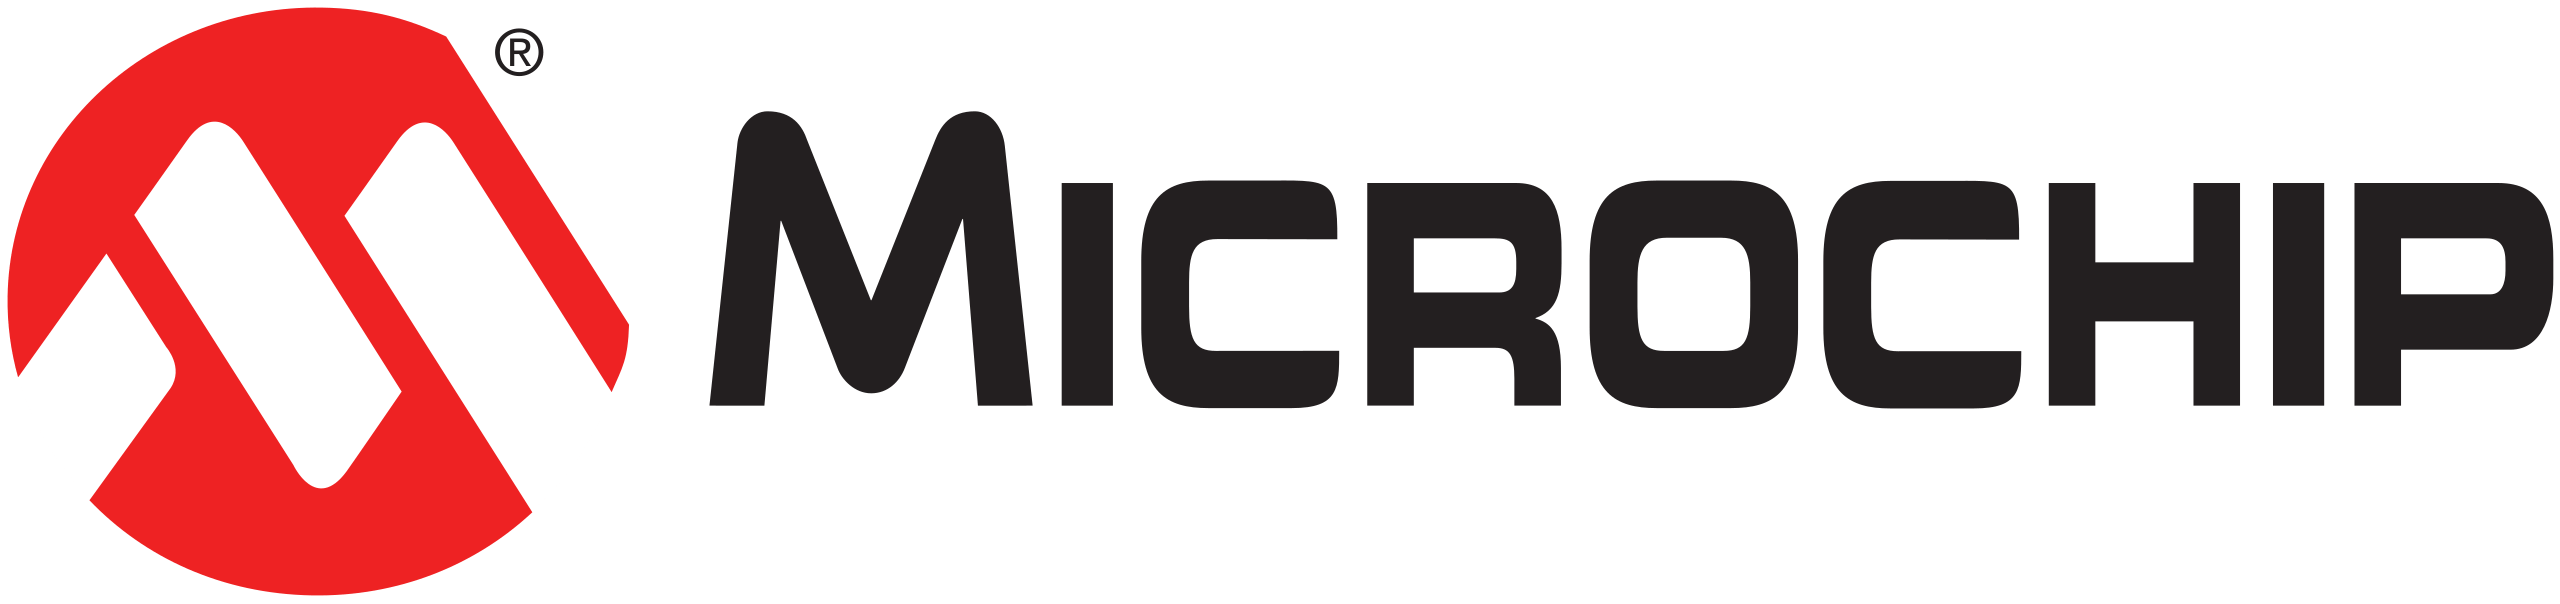 Microchip_logo.svg